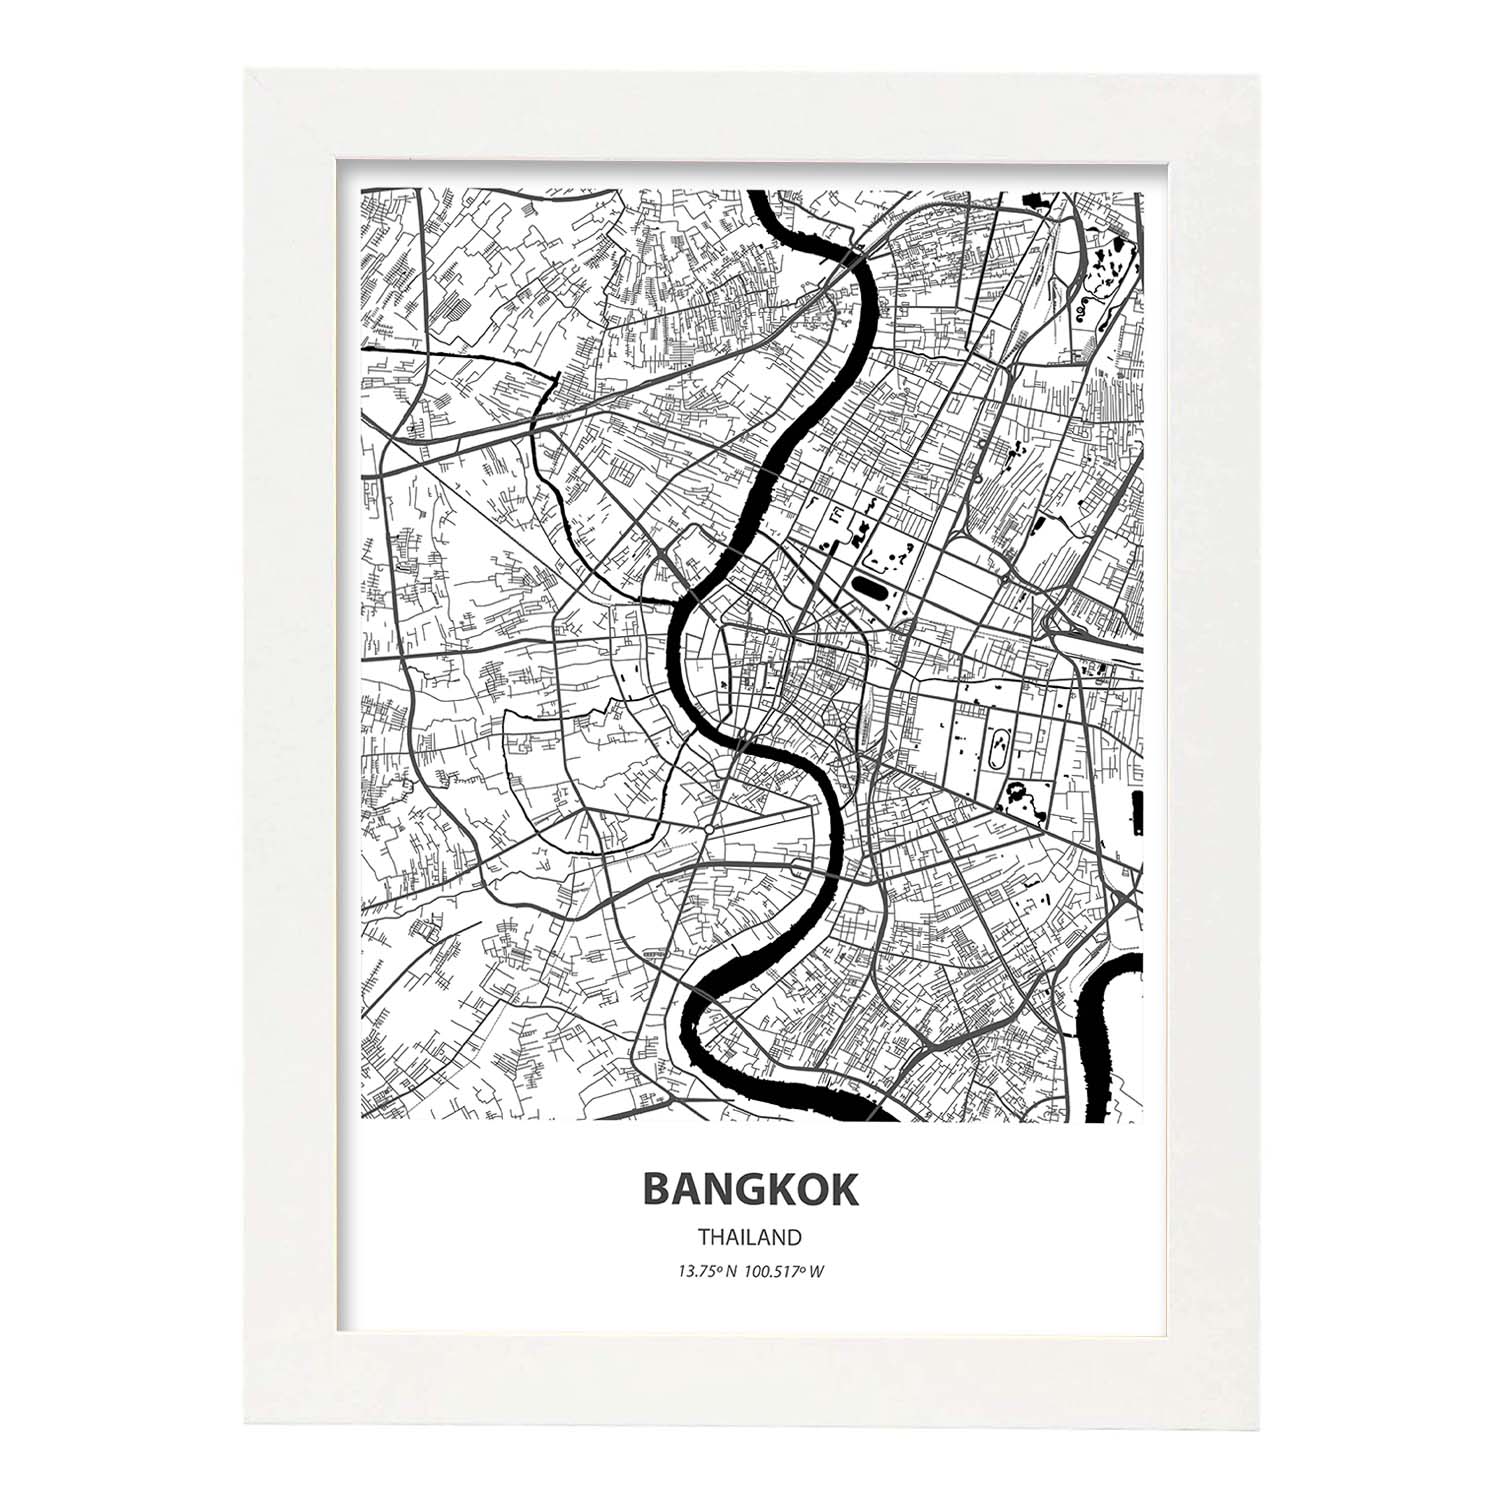 Poster con mapa de Bangkok - Tailandia. Láminas de ciudades de Asia con mares y ríos en color negro.-Artwork-Nacnic-A3-Marco Blanco-Nacnic Estudio SL